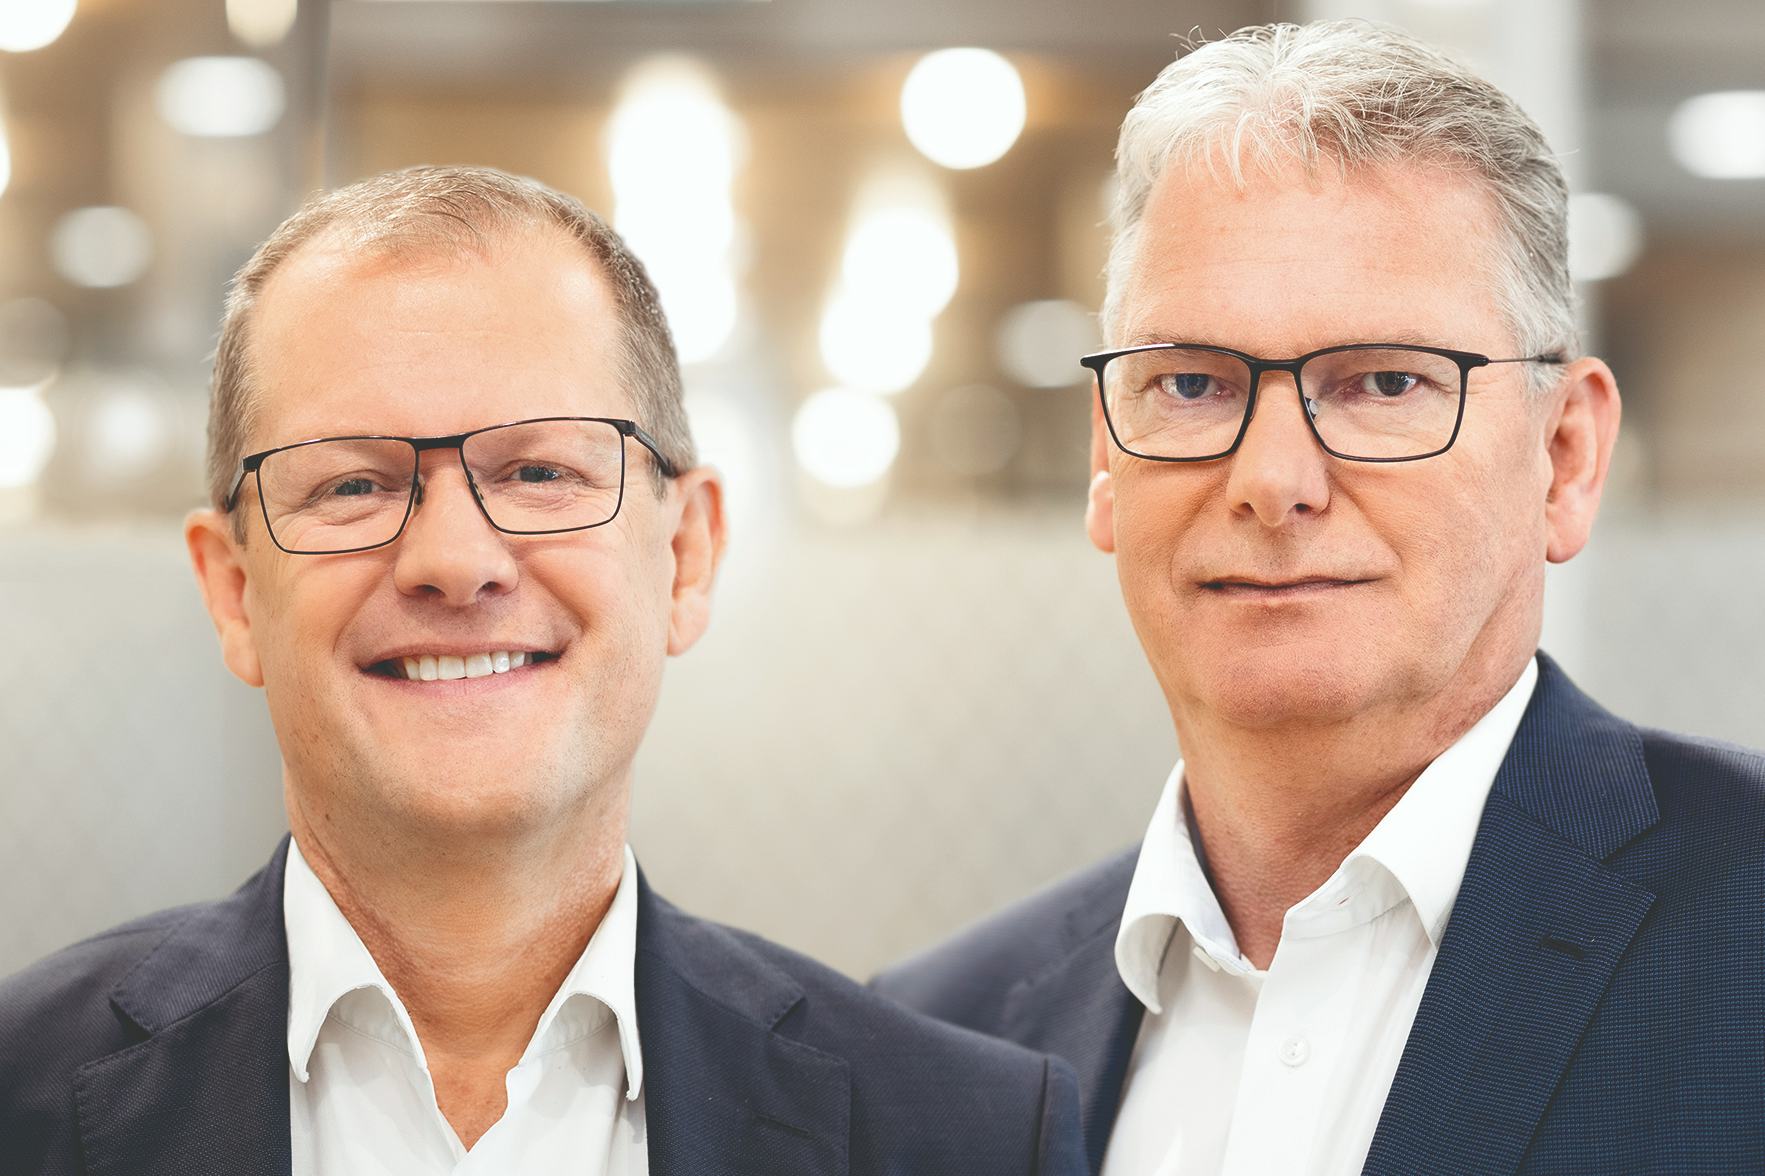 Directeur Martin Keegstra en manager sales & marketing Daniël Nieuwenhuizen: "We moeten als keten efficiënter zijn om rendabel te kunnen blijven."